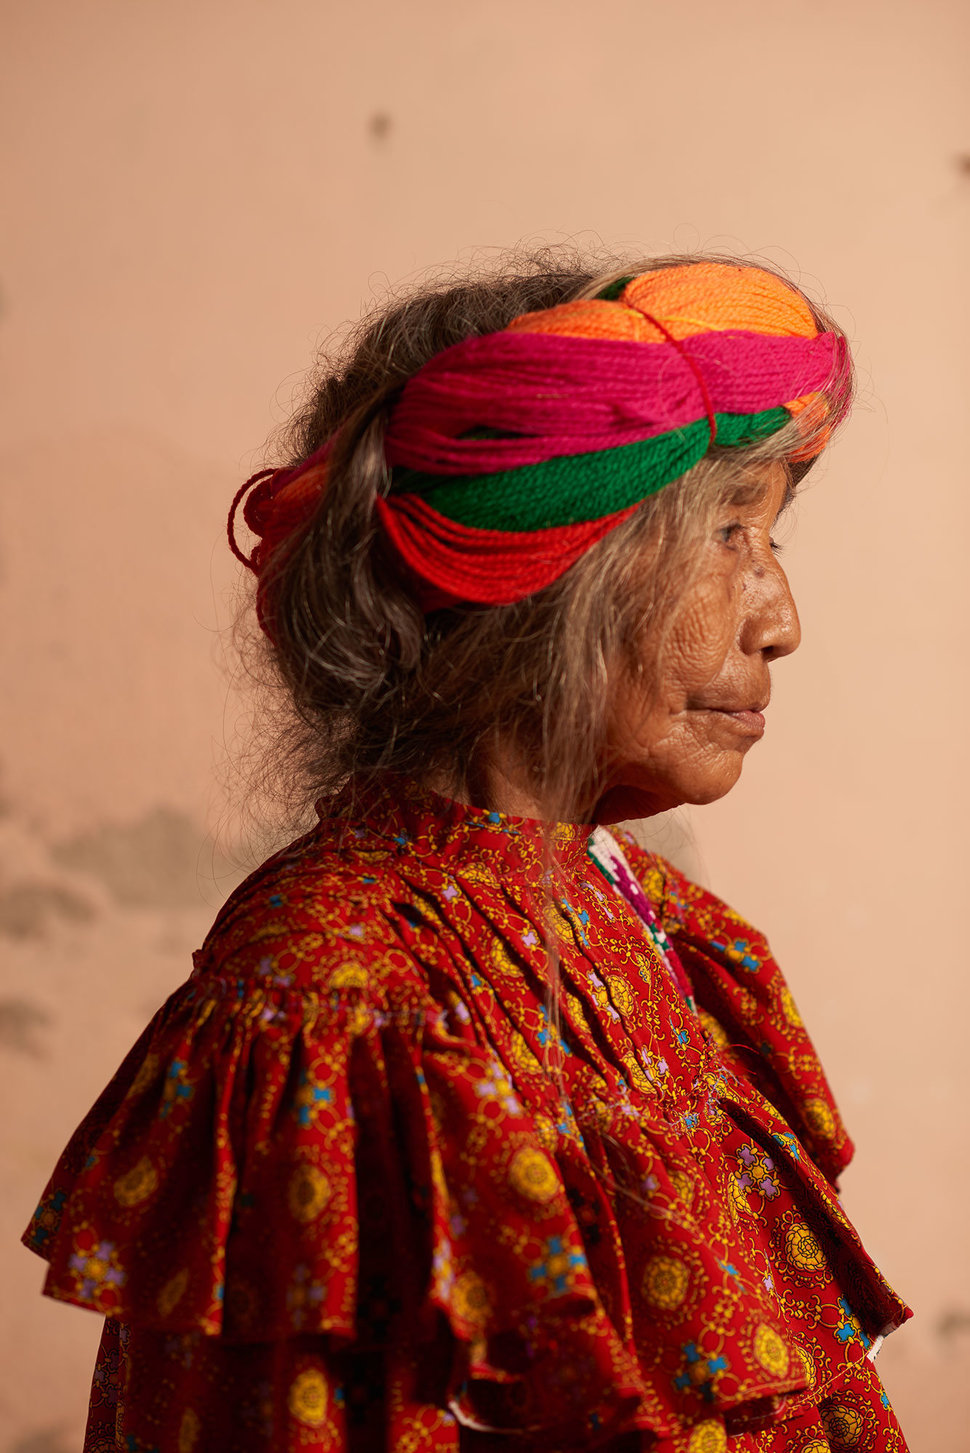 Коренные народы Мексики в ослепительных костюмах. Фотограф Диего Уэрта